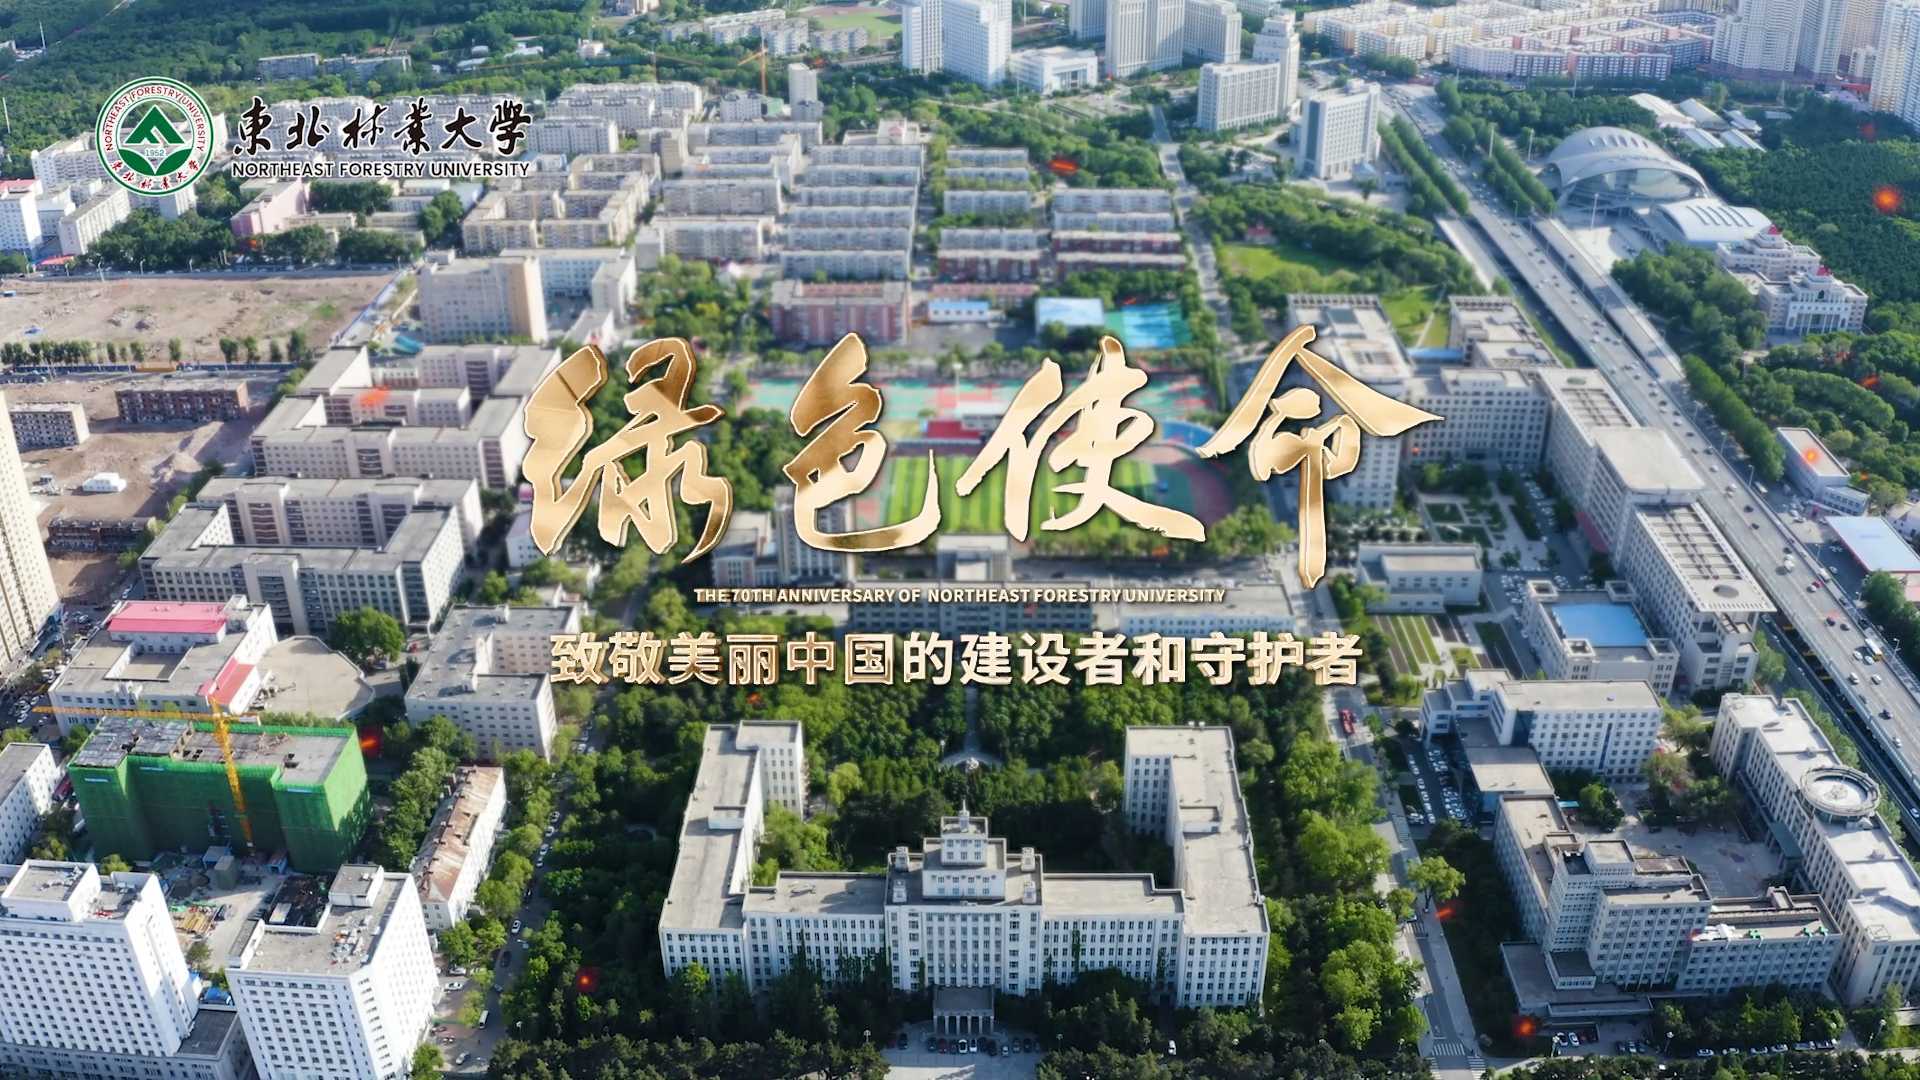 绿色使命-东北林业大学70周年校庆宣传片